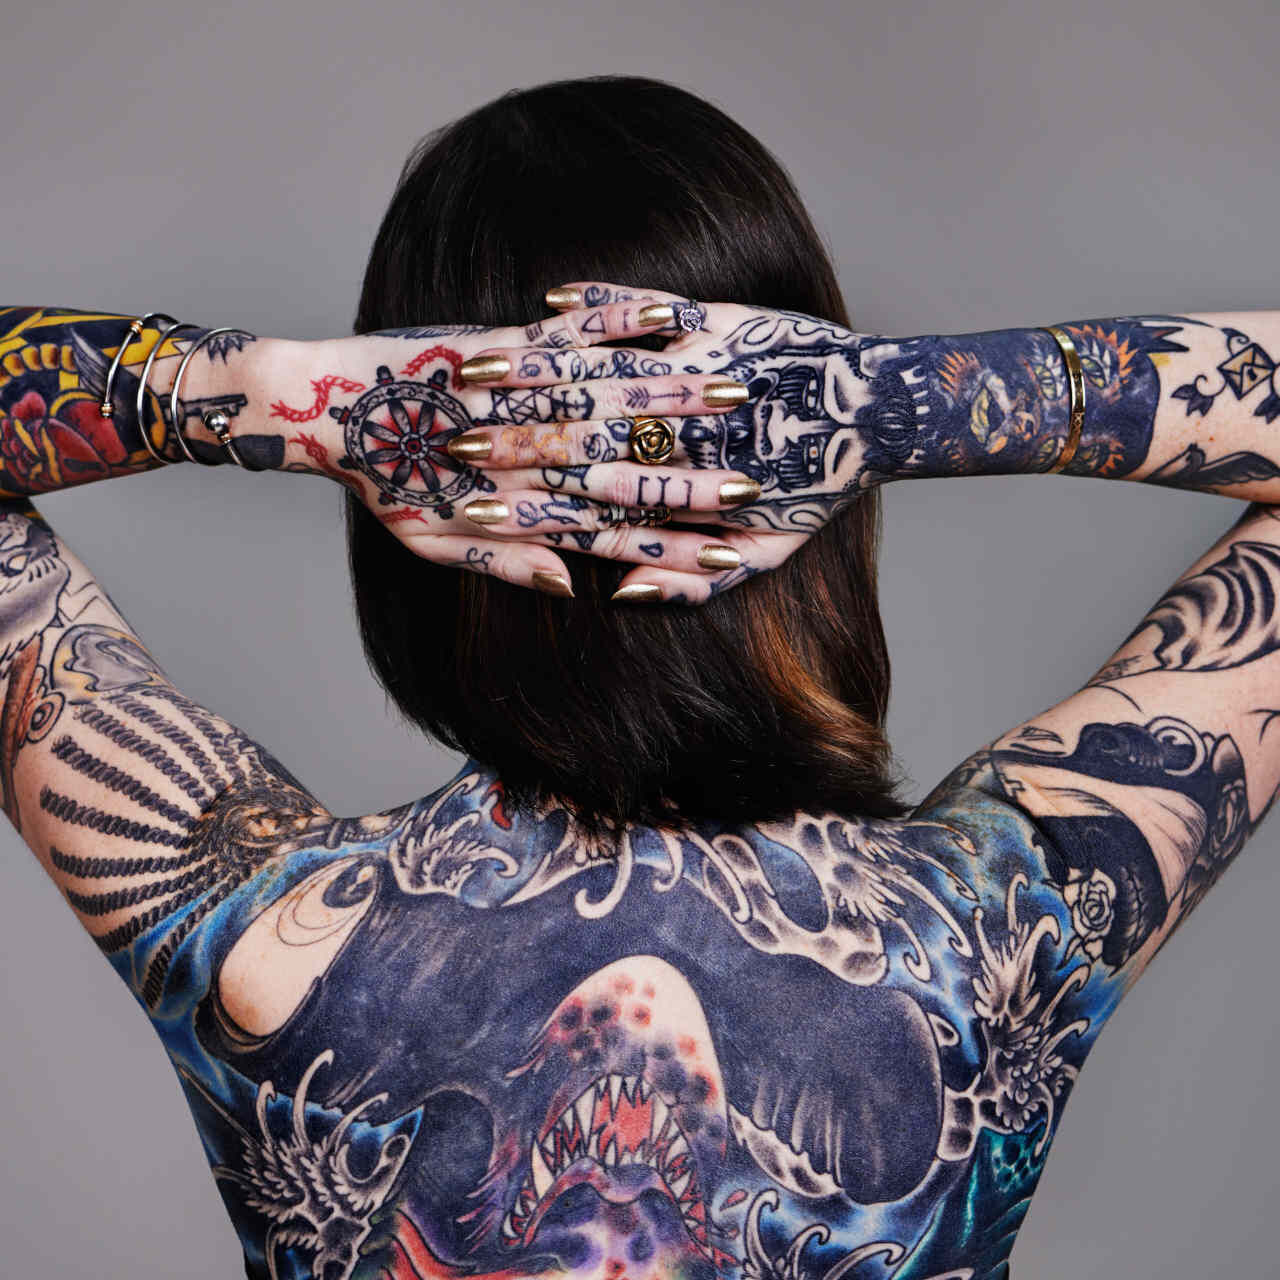 Chemie a tetování: co je v pigmentech?